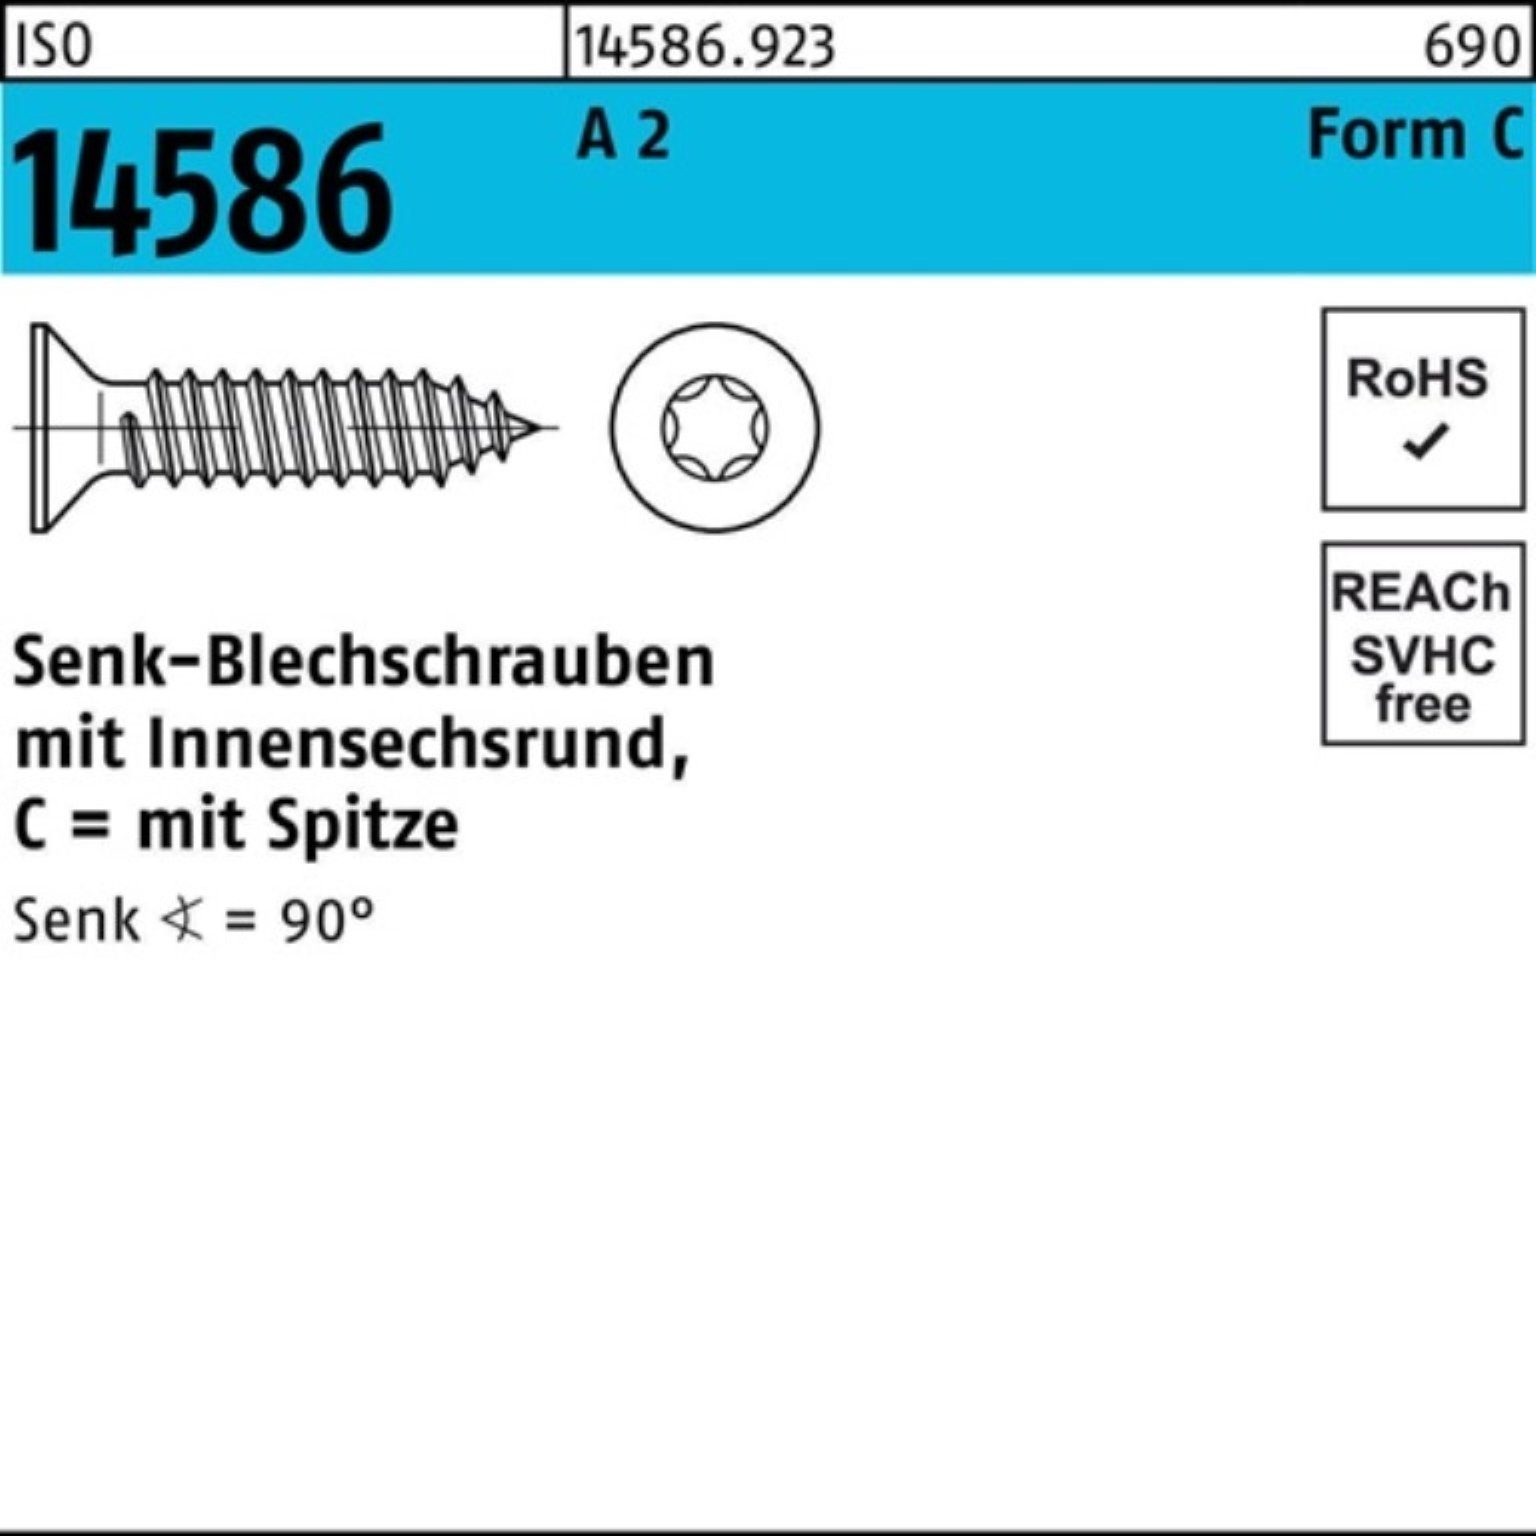 Reyher Schraube 500er Senkblechschraube 3,9x ISR/Spitze 14586 ISO T15 Pack 2 A 5 -C 32